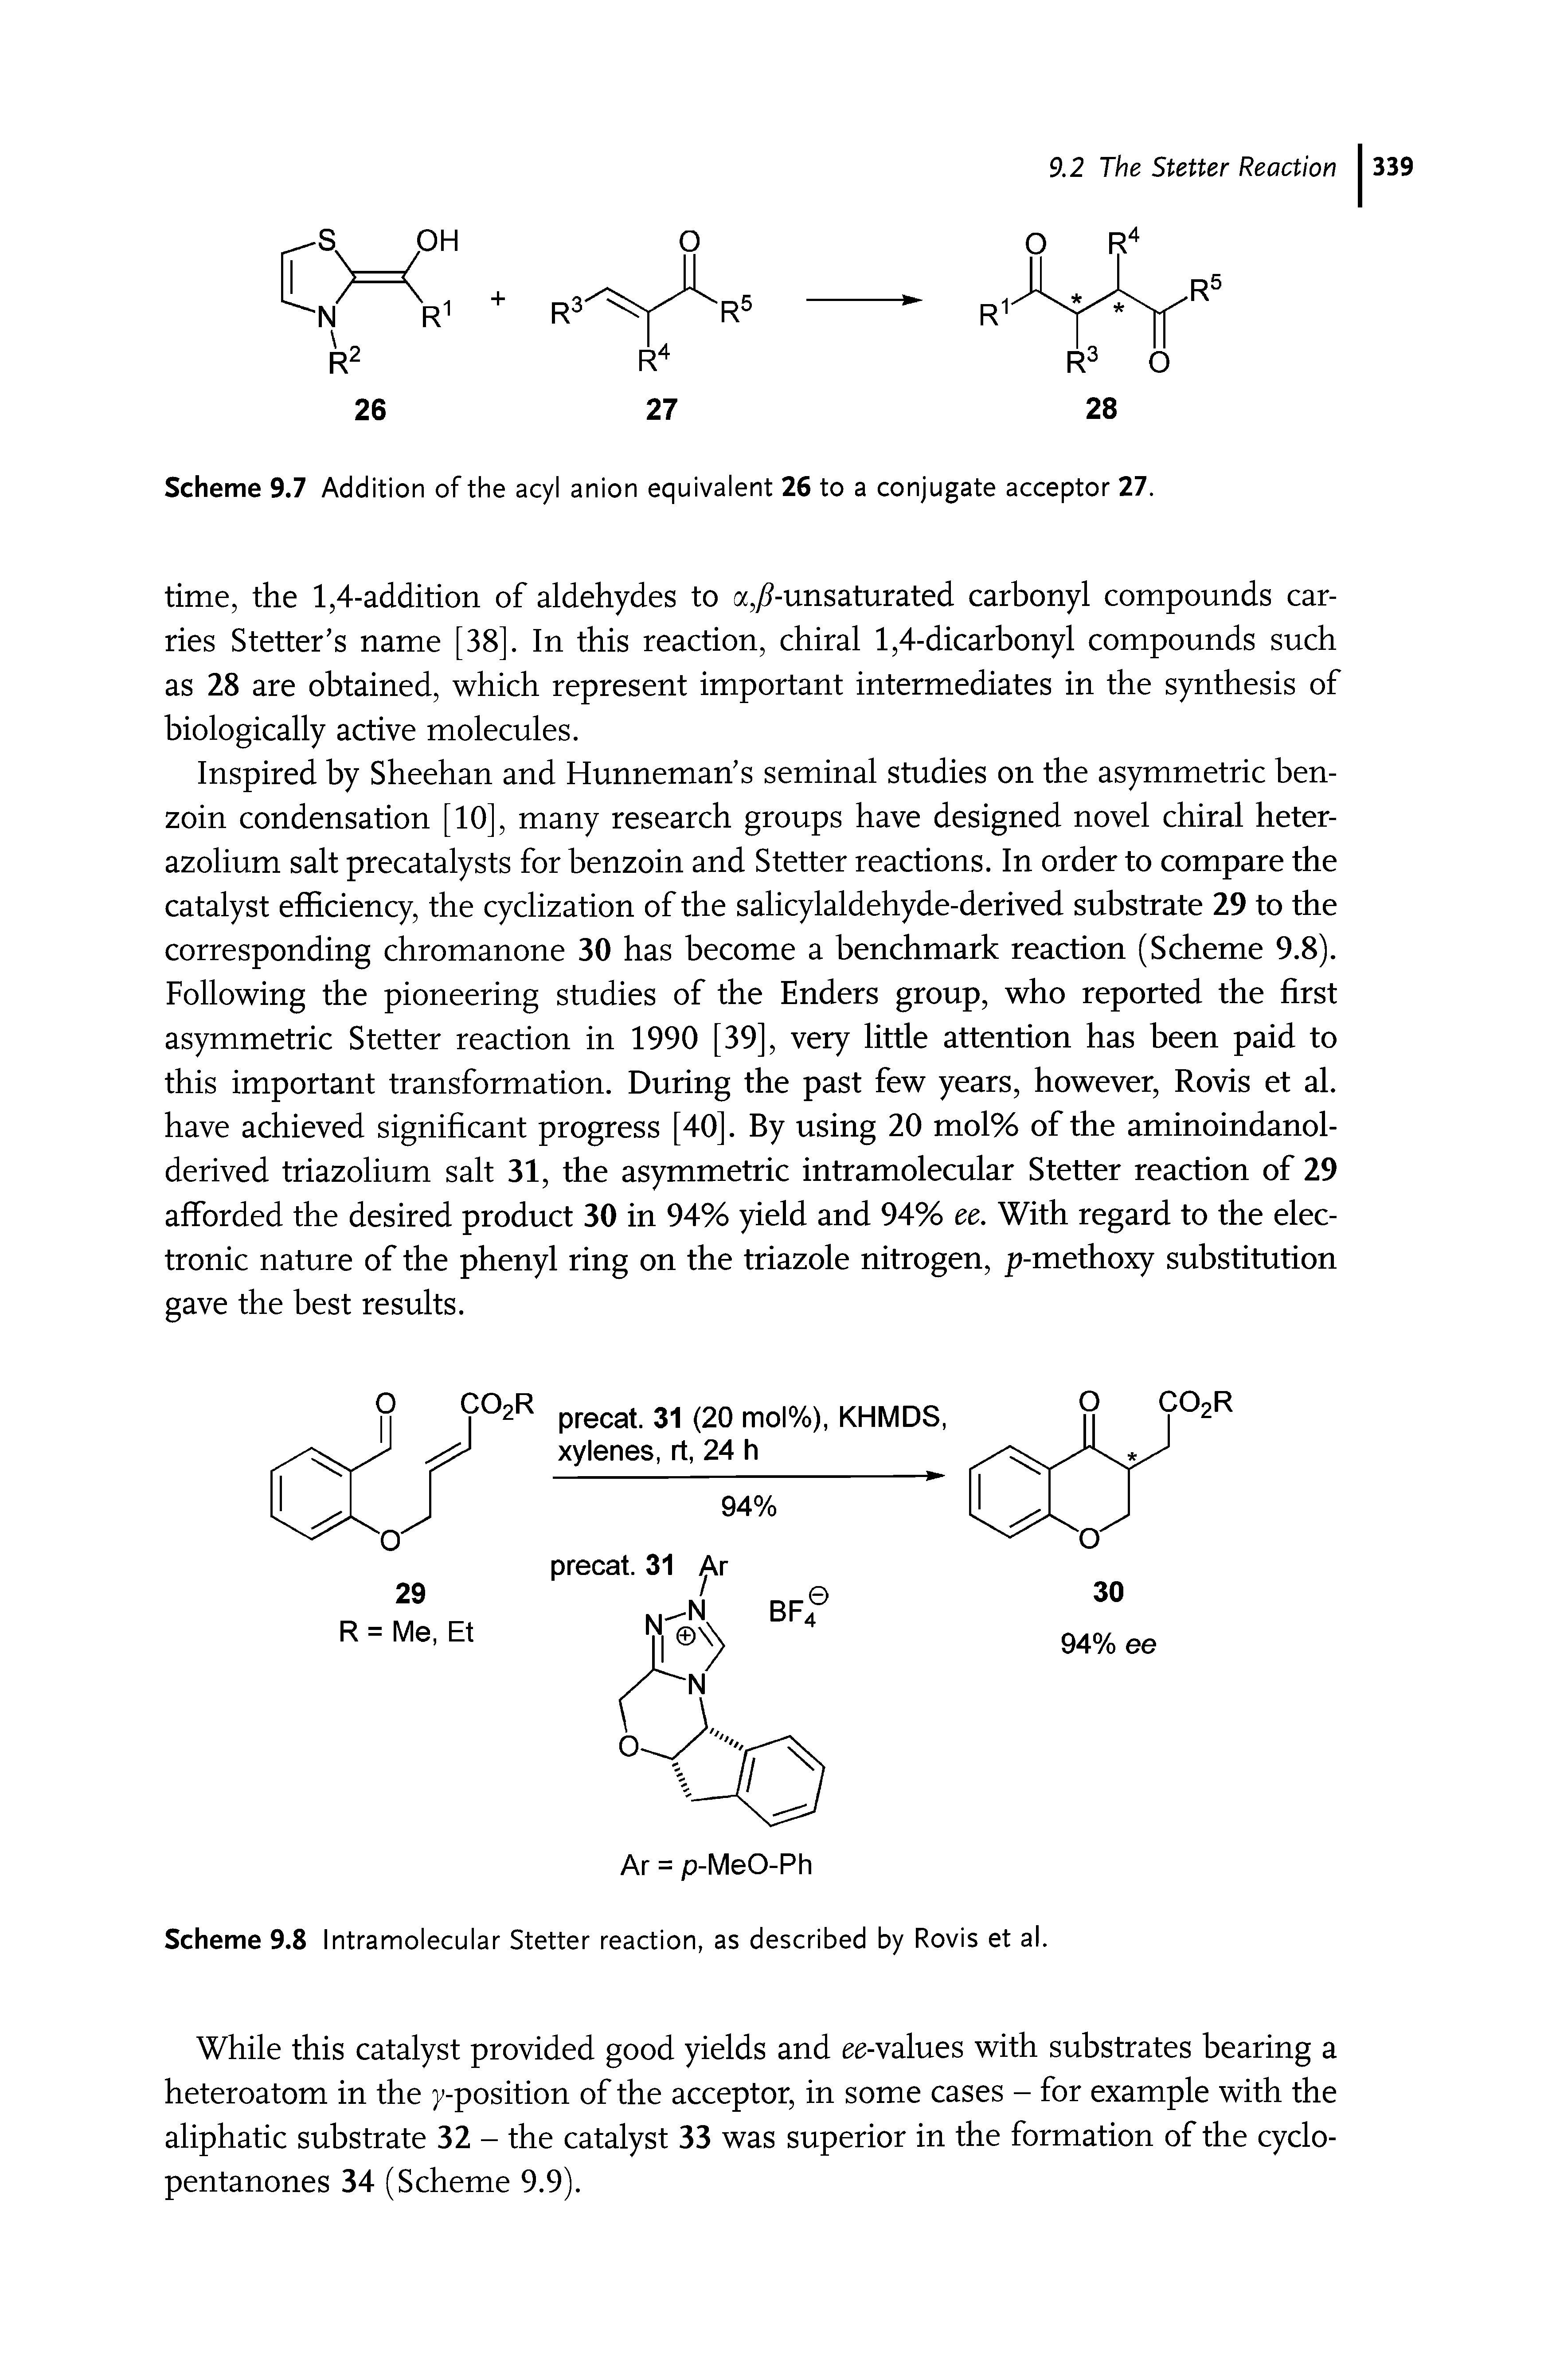 Scheme 9.8 Intramolecular Stetter reaction, as described by Rovis et al.